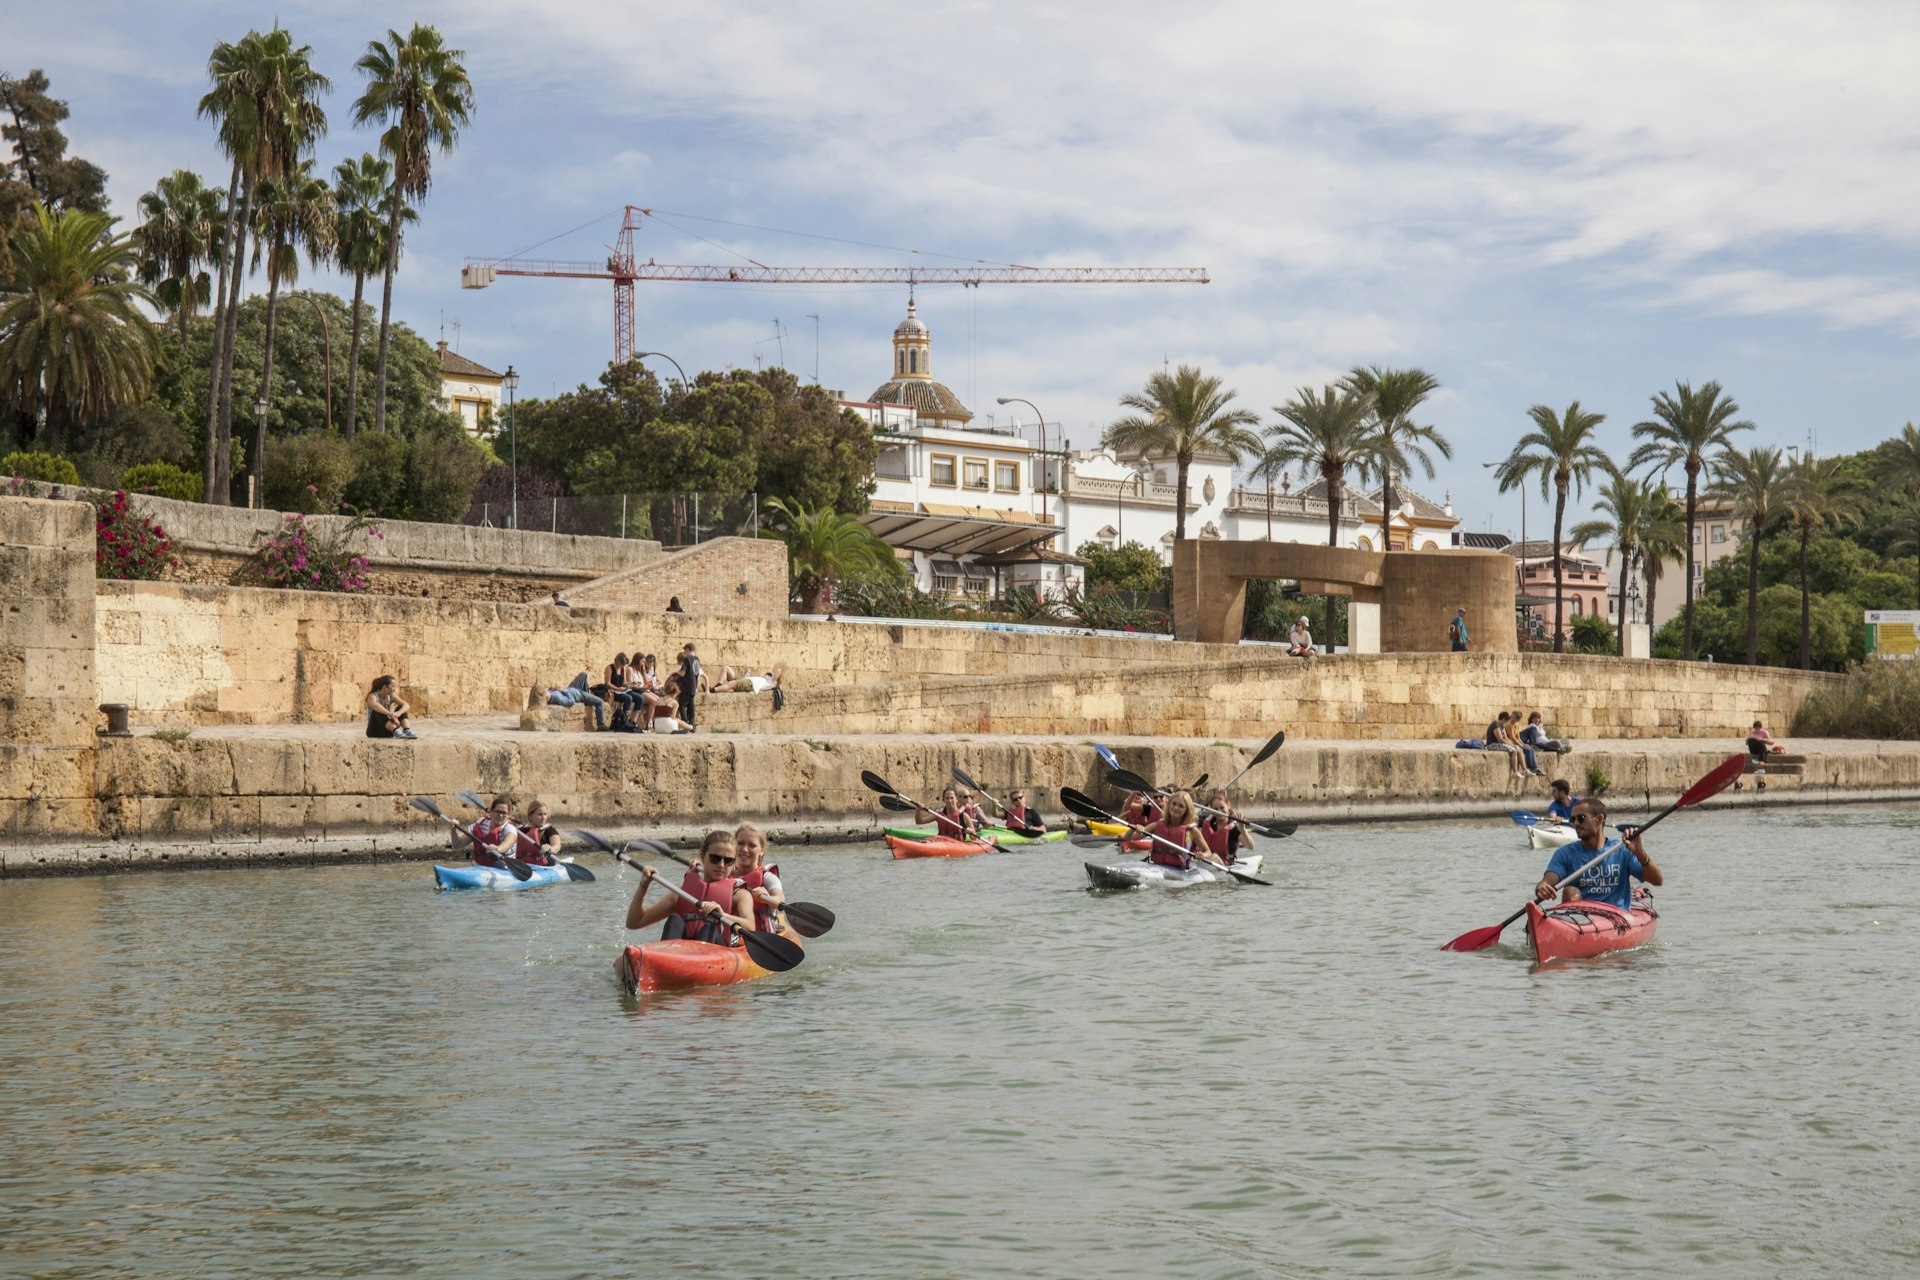 Kayak Sevilla kayaking tour on the Guadalquivir river